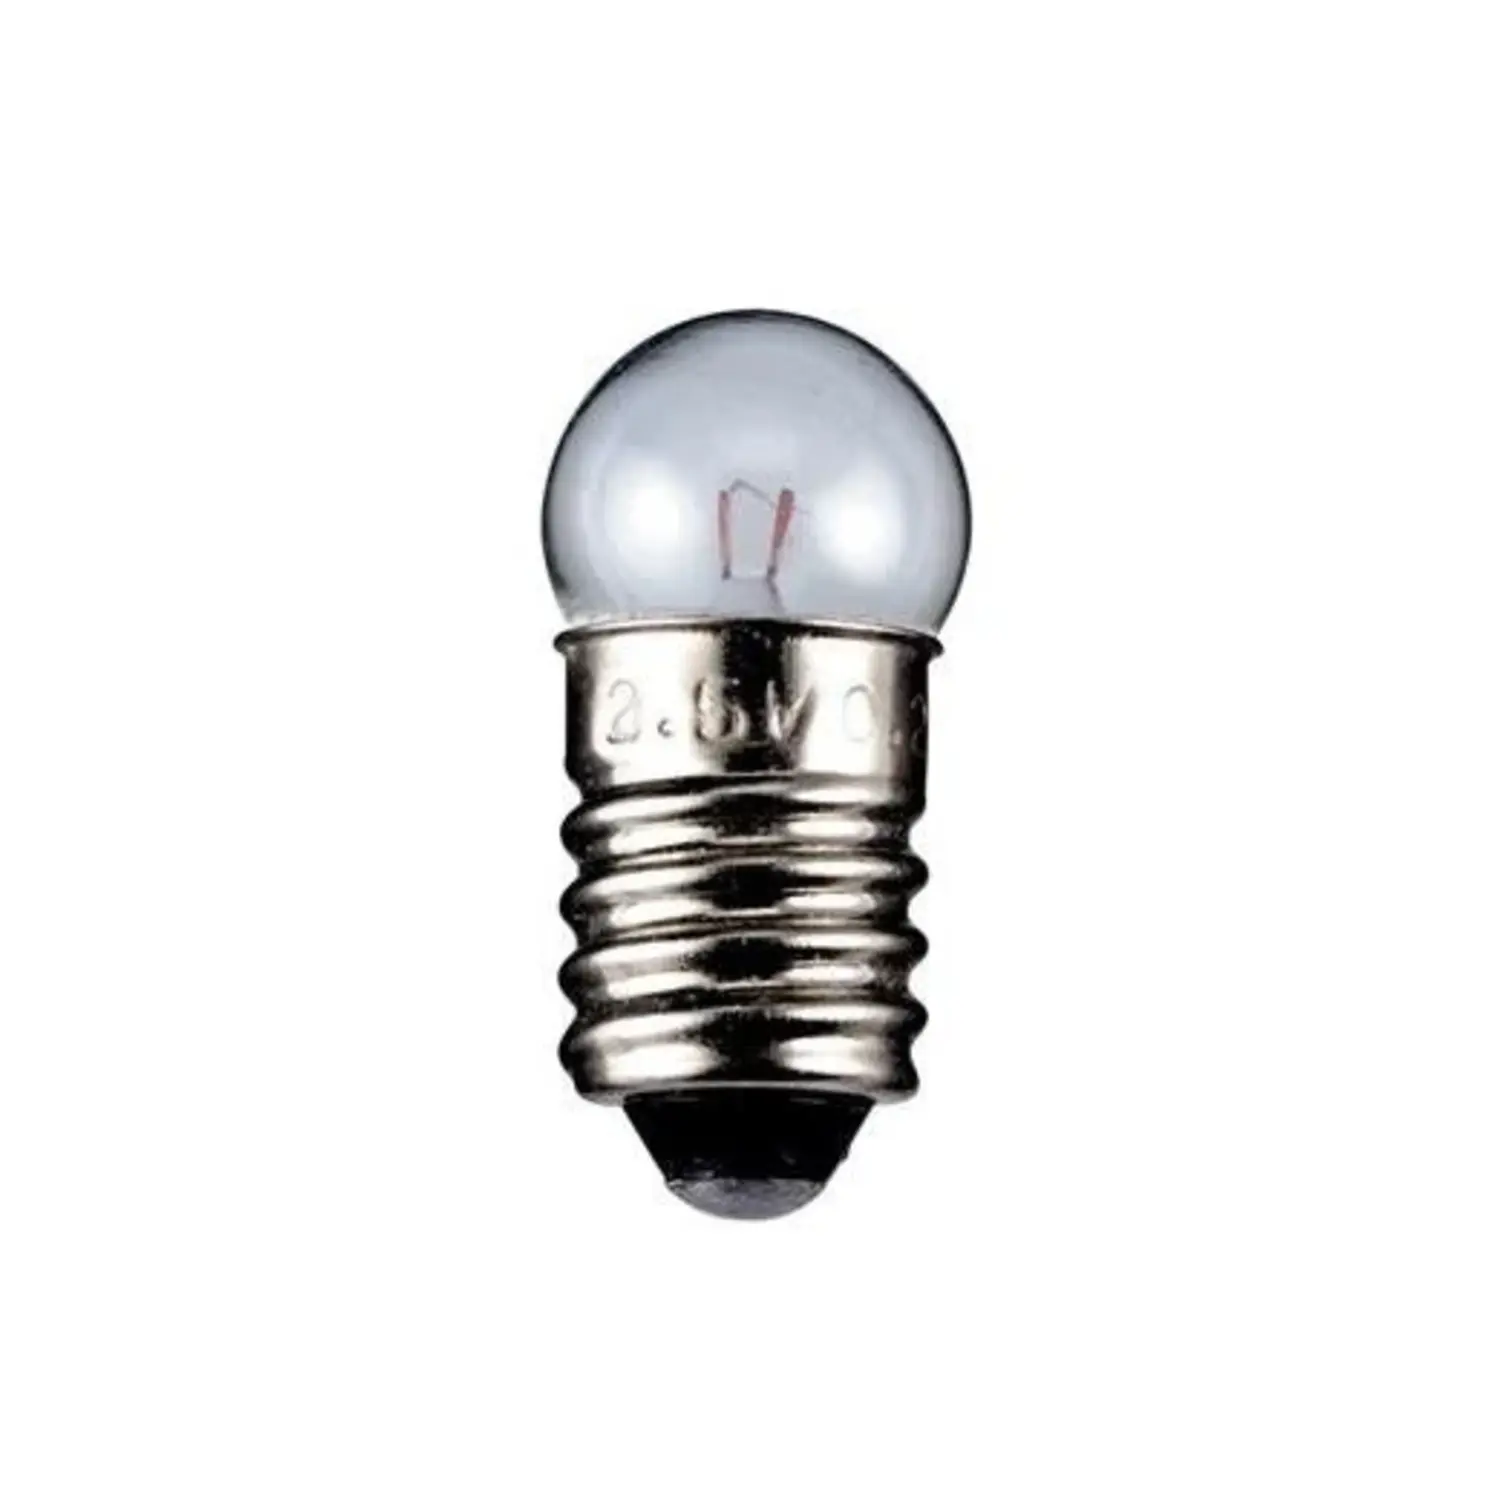 immagine del prodotto lampadina globulare chiara 4,8 volt trasparente E10 CE 1,44 watt wnt 9578